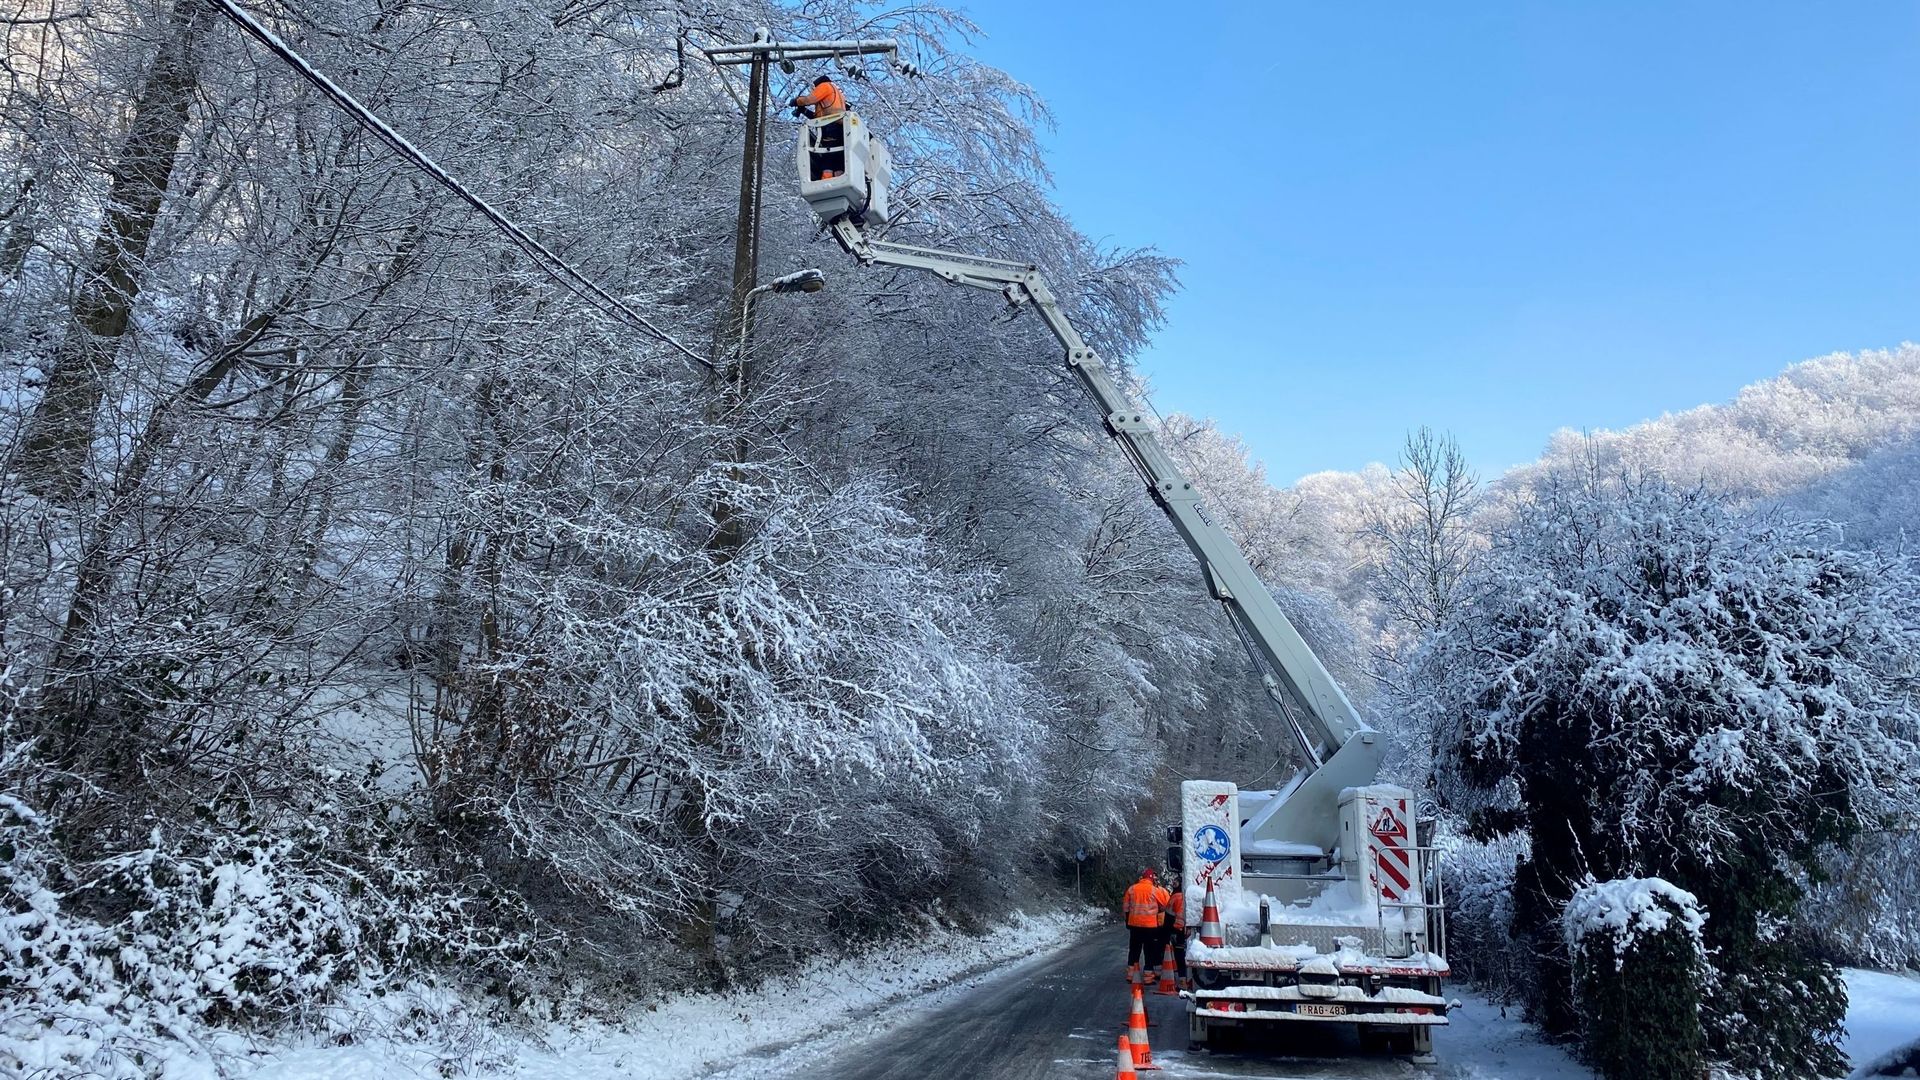 Les techniciens de RESA travaillent sur les lignes électriques abîmées par la neige